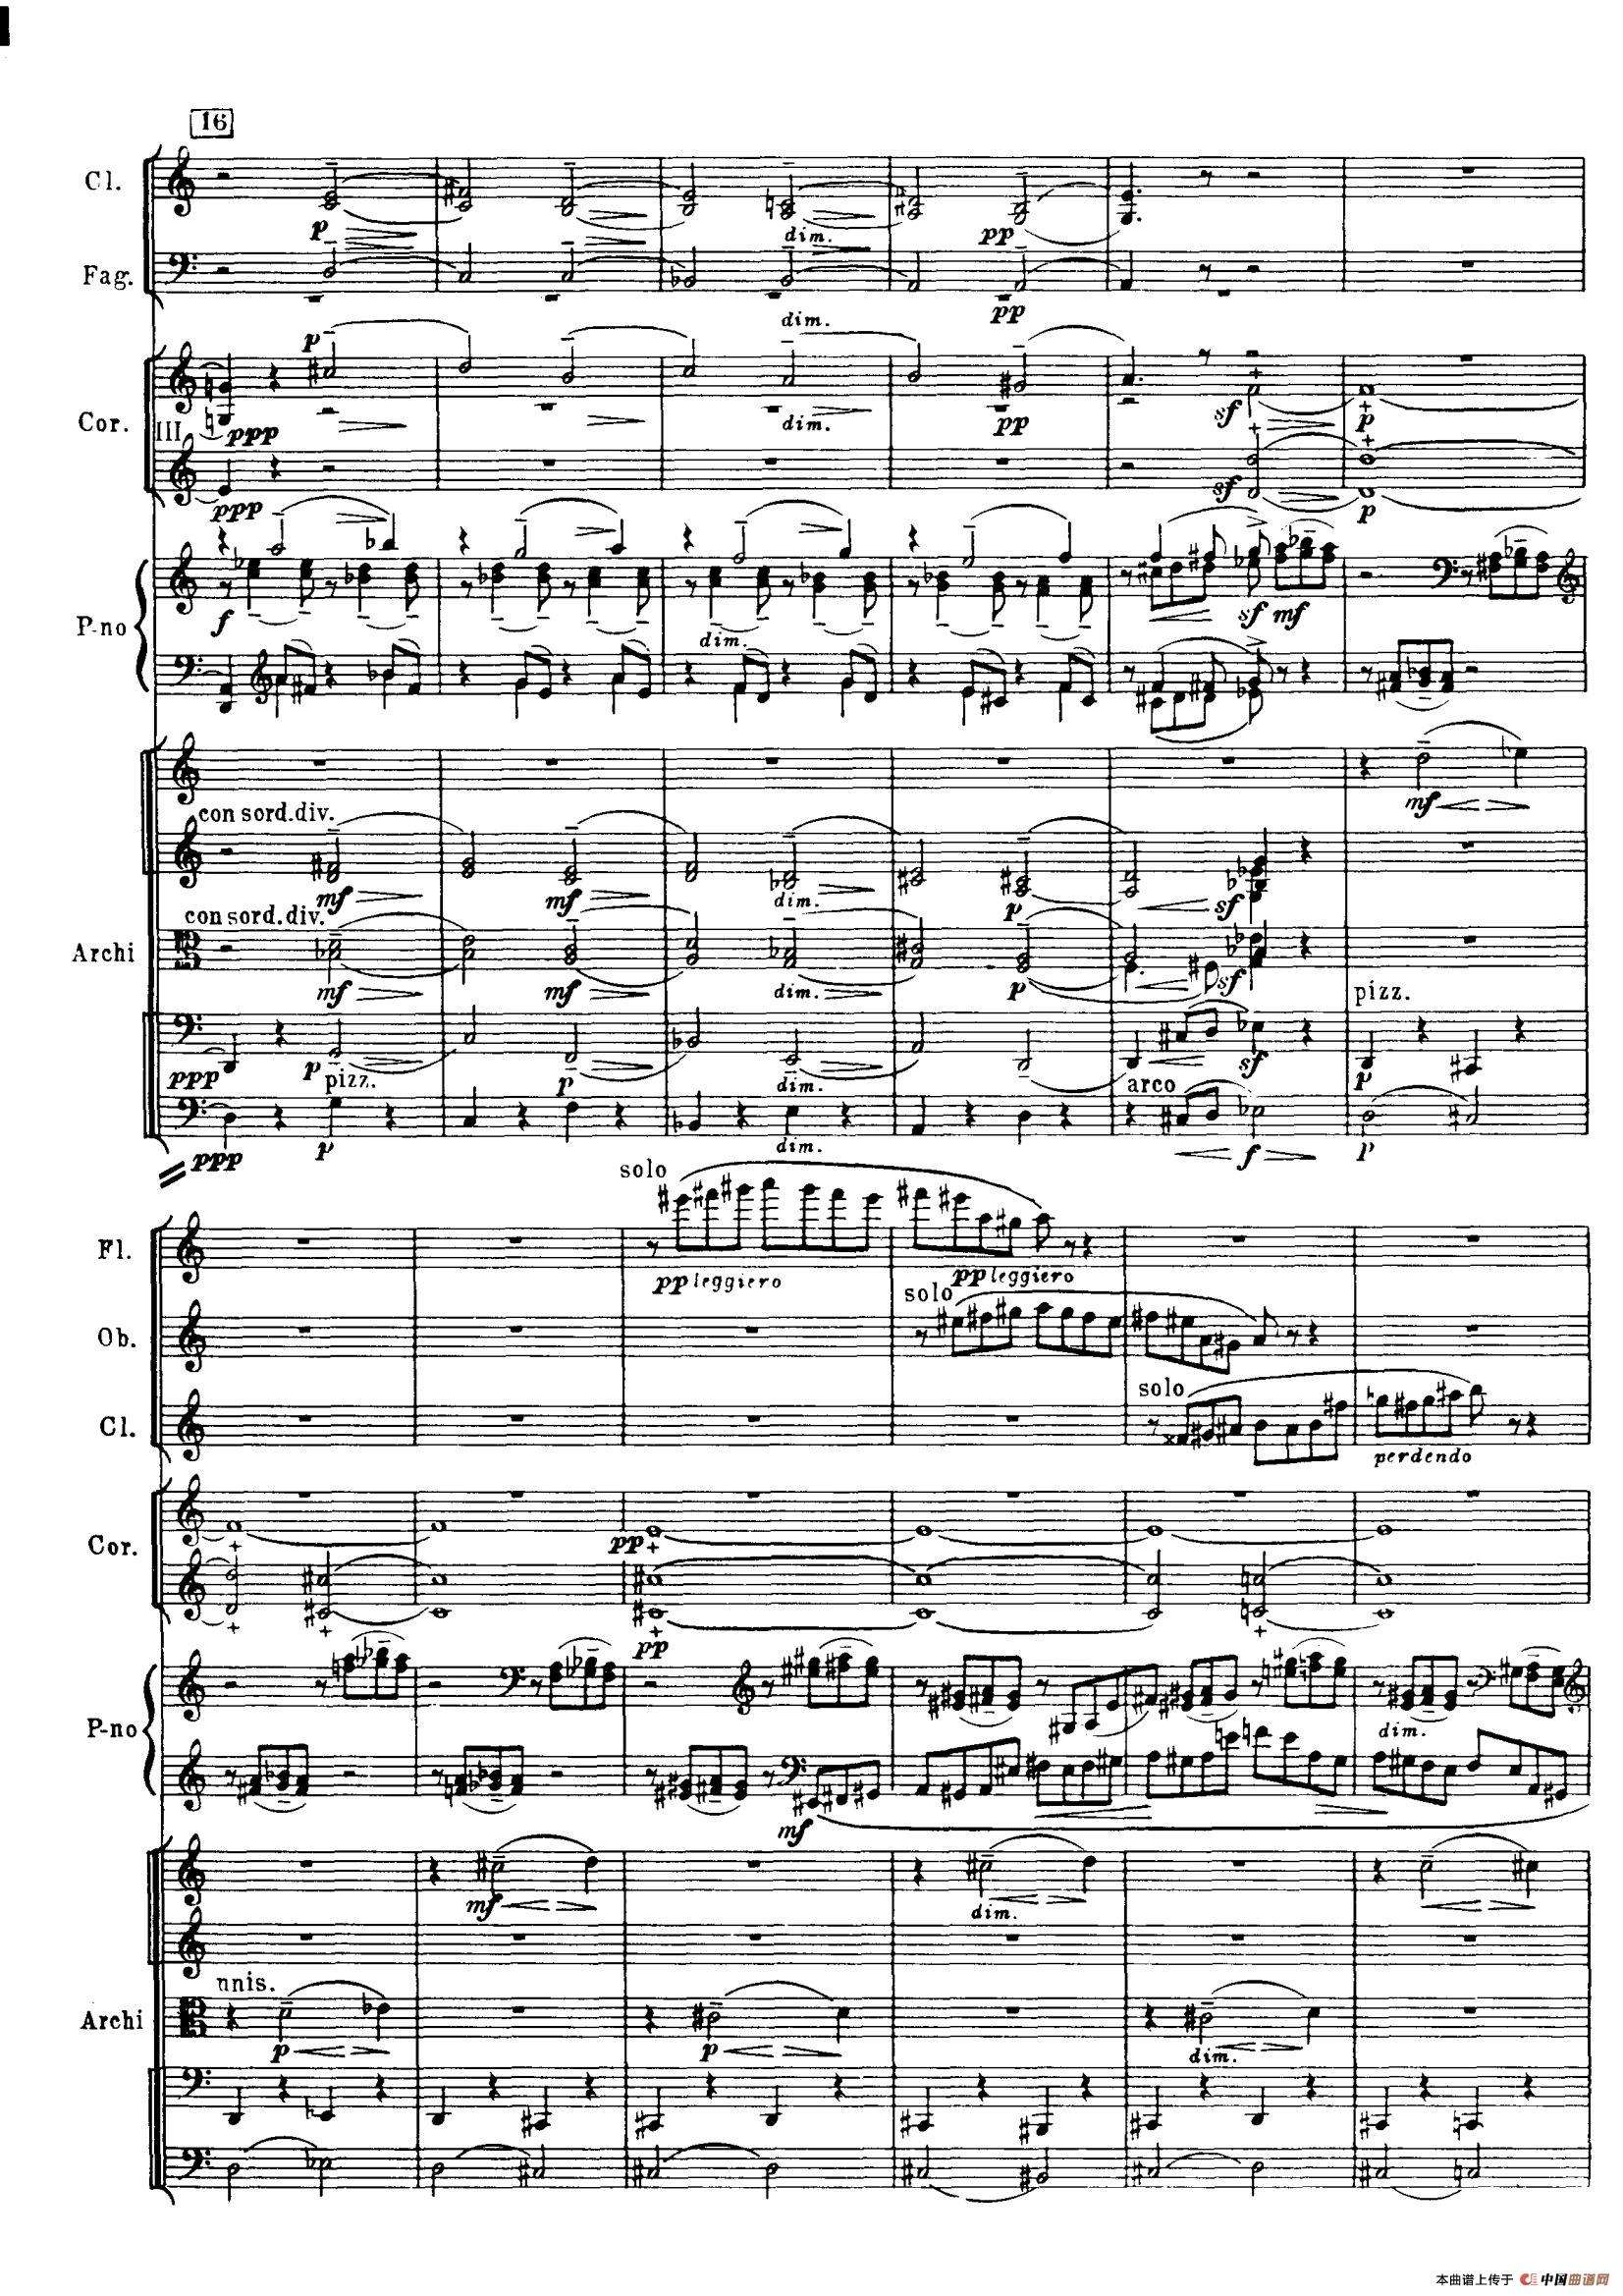 普罗科菲耶夫第三钢琴协奏曲总谱(普罗科菲耶夫第三钢琴协奏曲第三乐章钢琴谱)